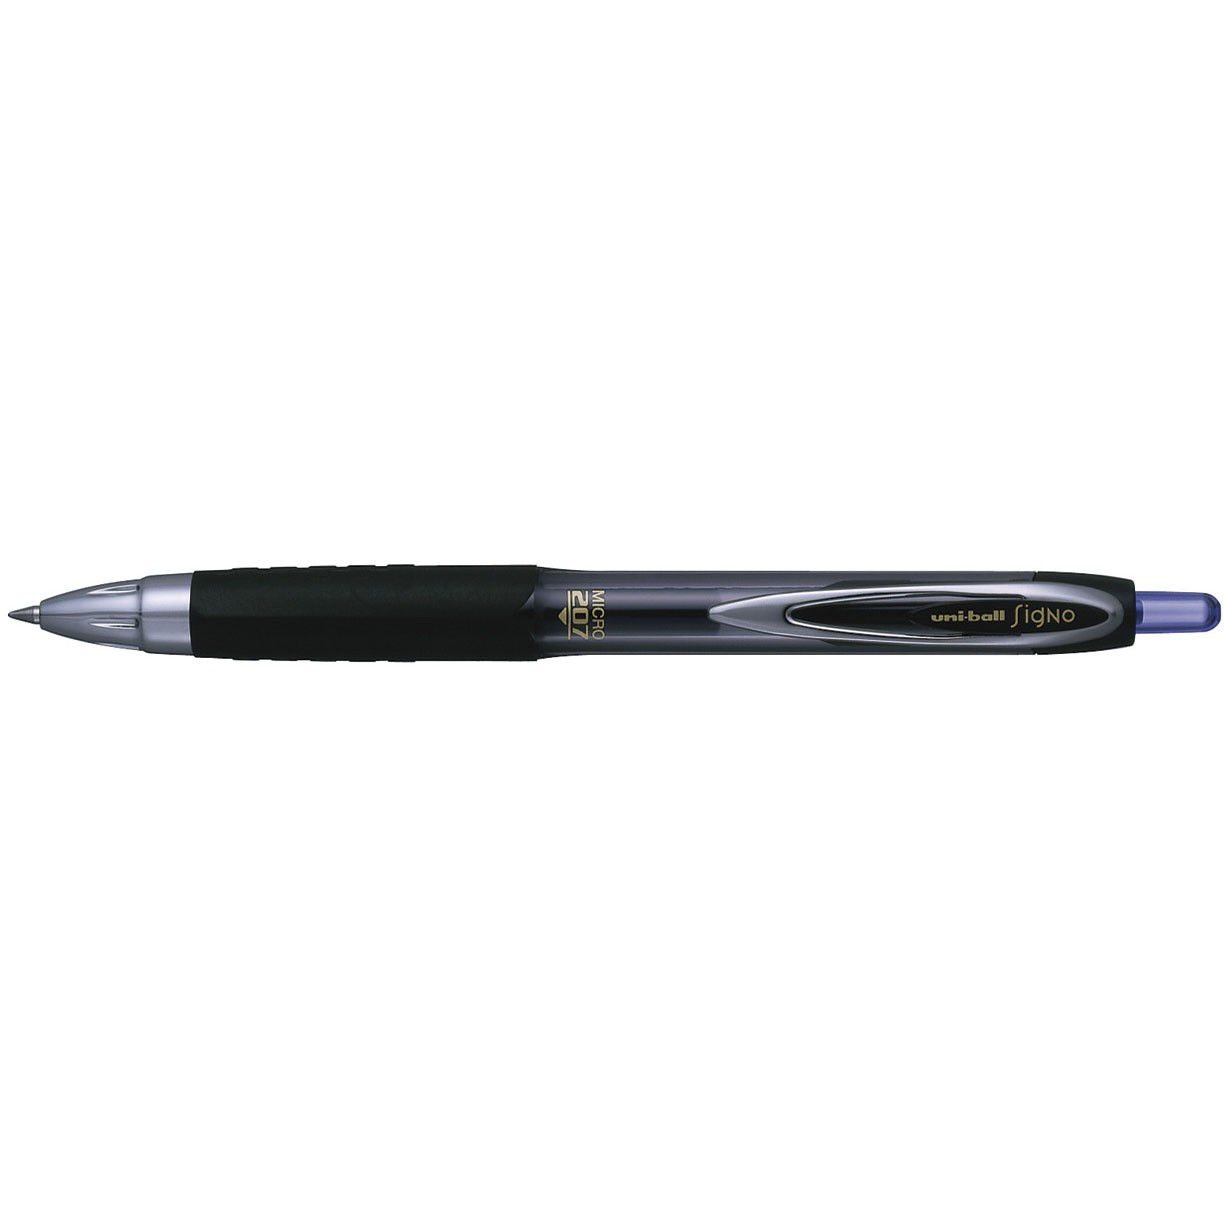 Uni-ball Signo 207 pen med 0,3 mm stregbredde i farven blå